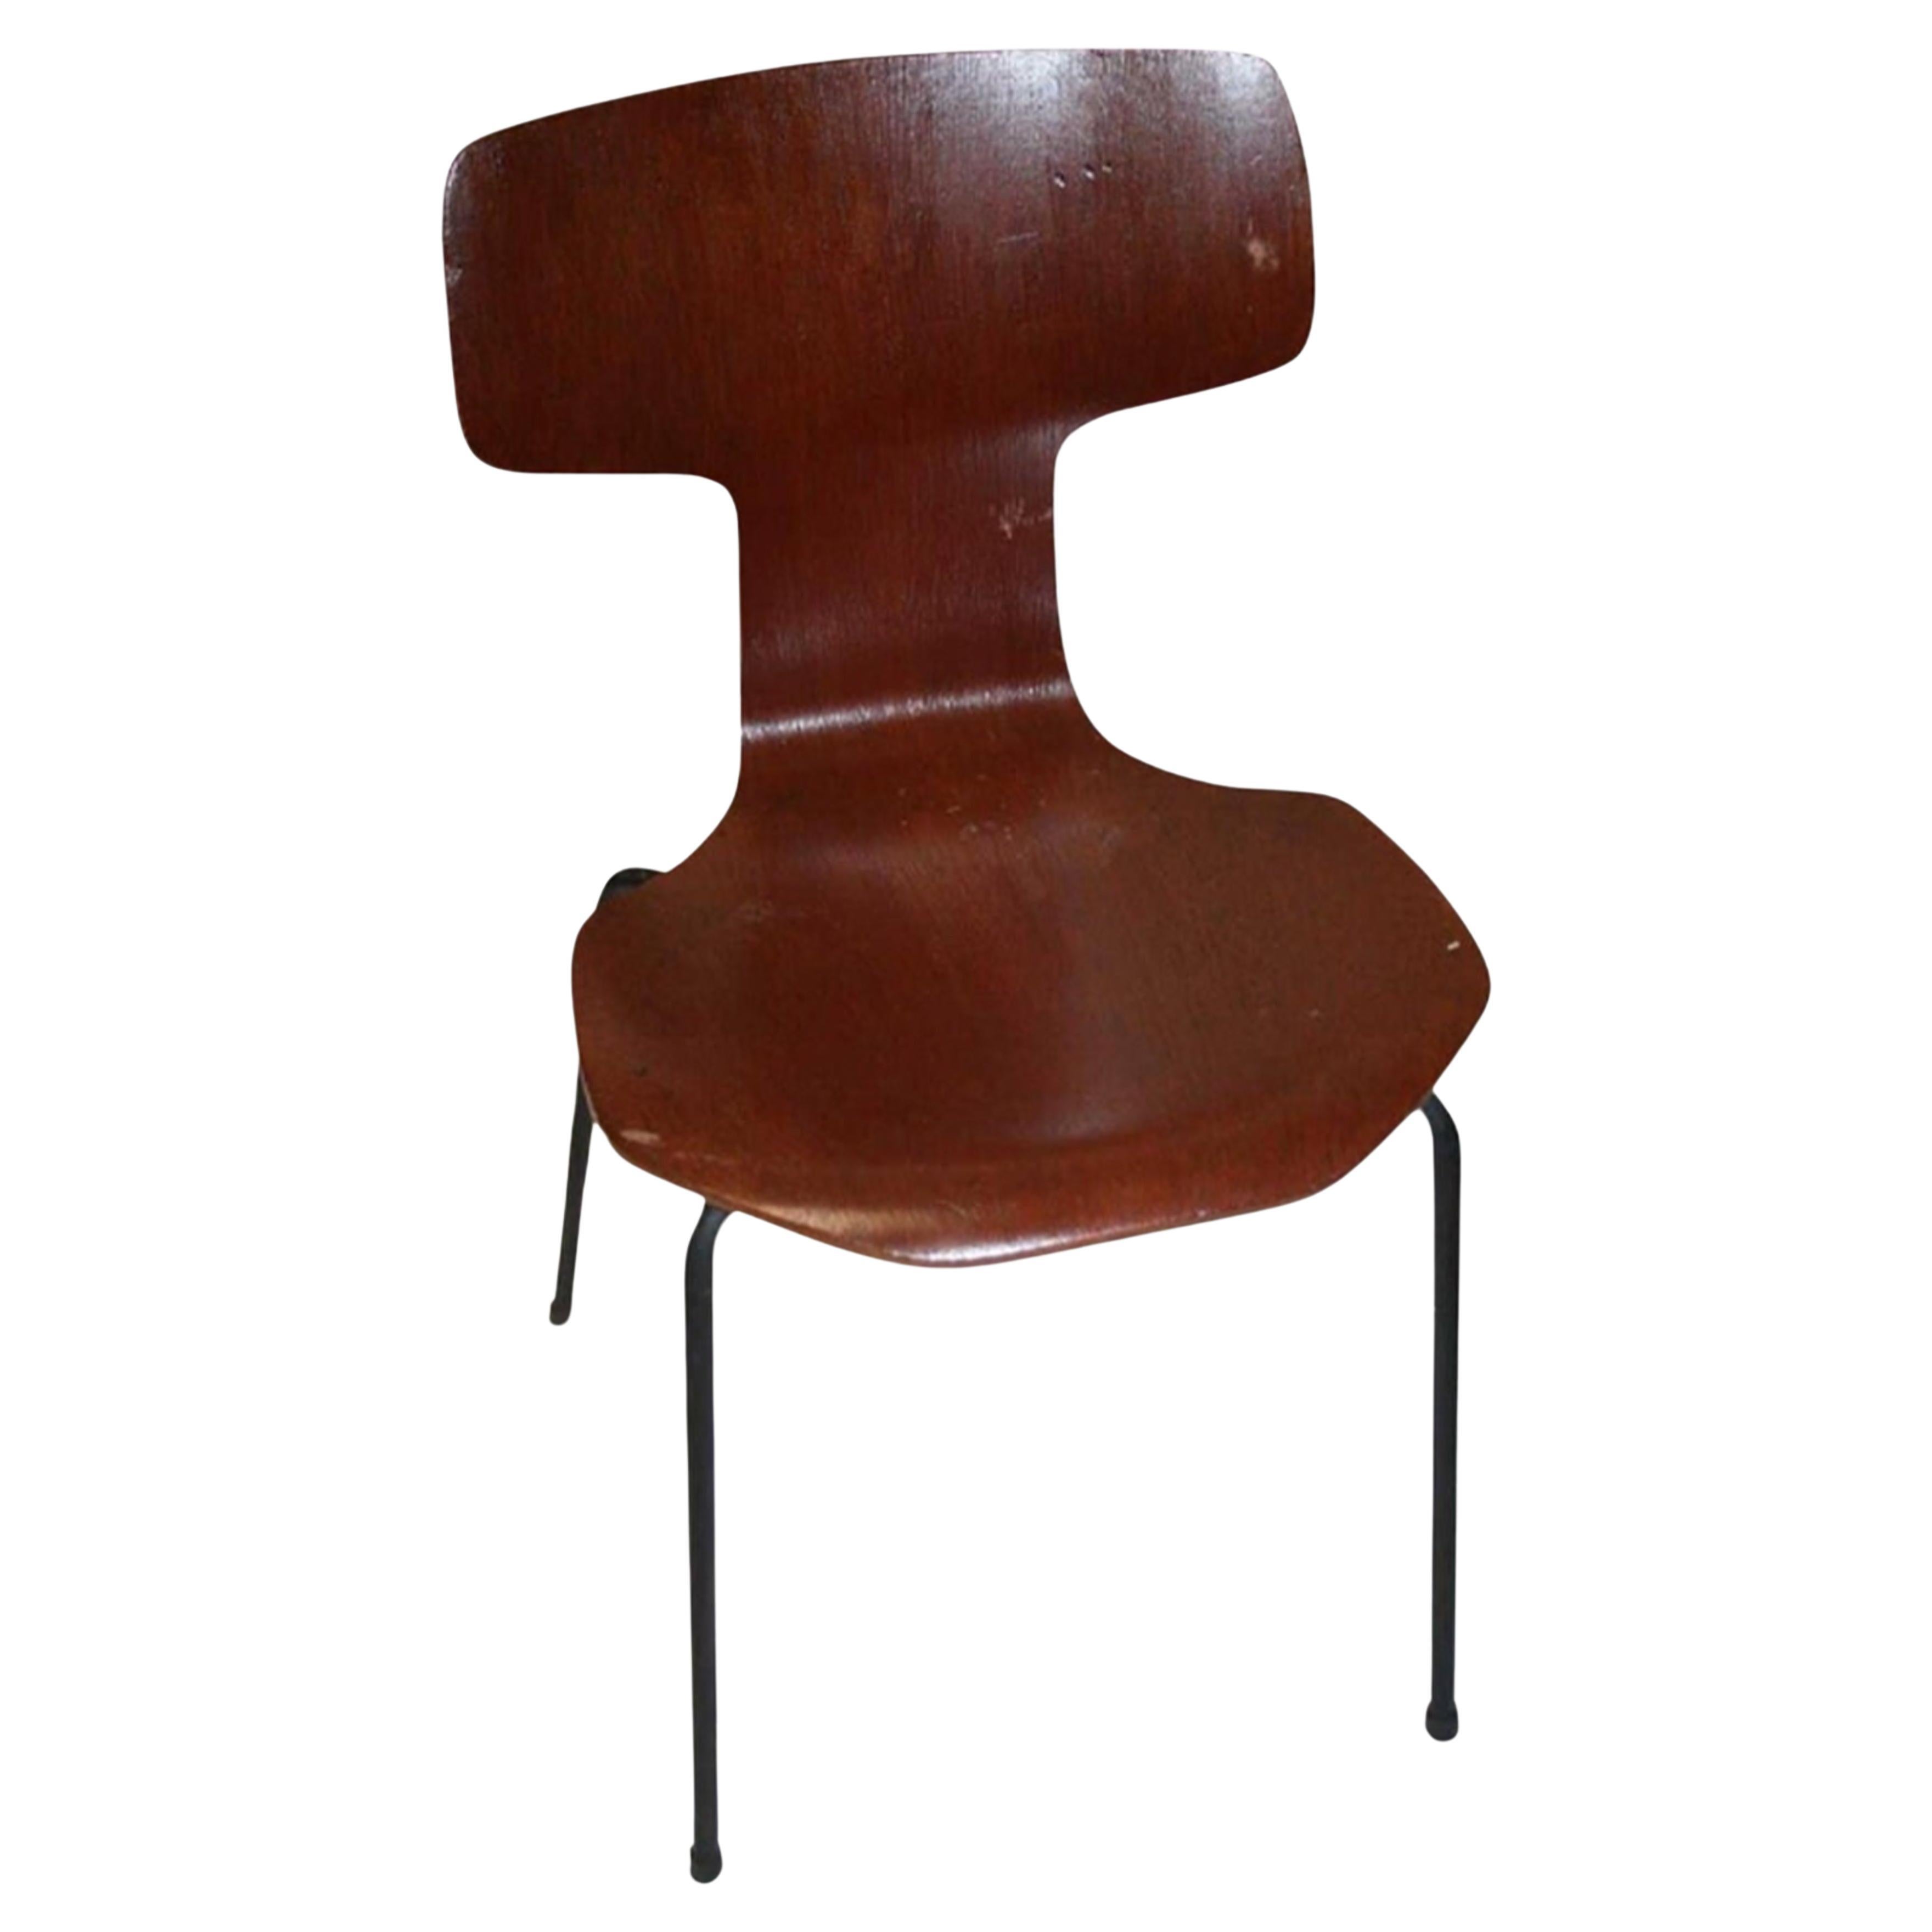 Original Labelled Arne Jacobsen for Fritz Hansen Model 3103 "Hammer Chair" 1965 For Sale